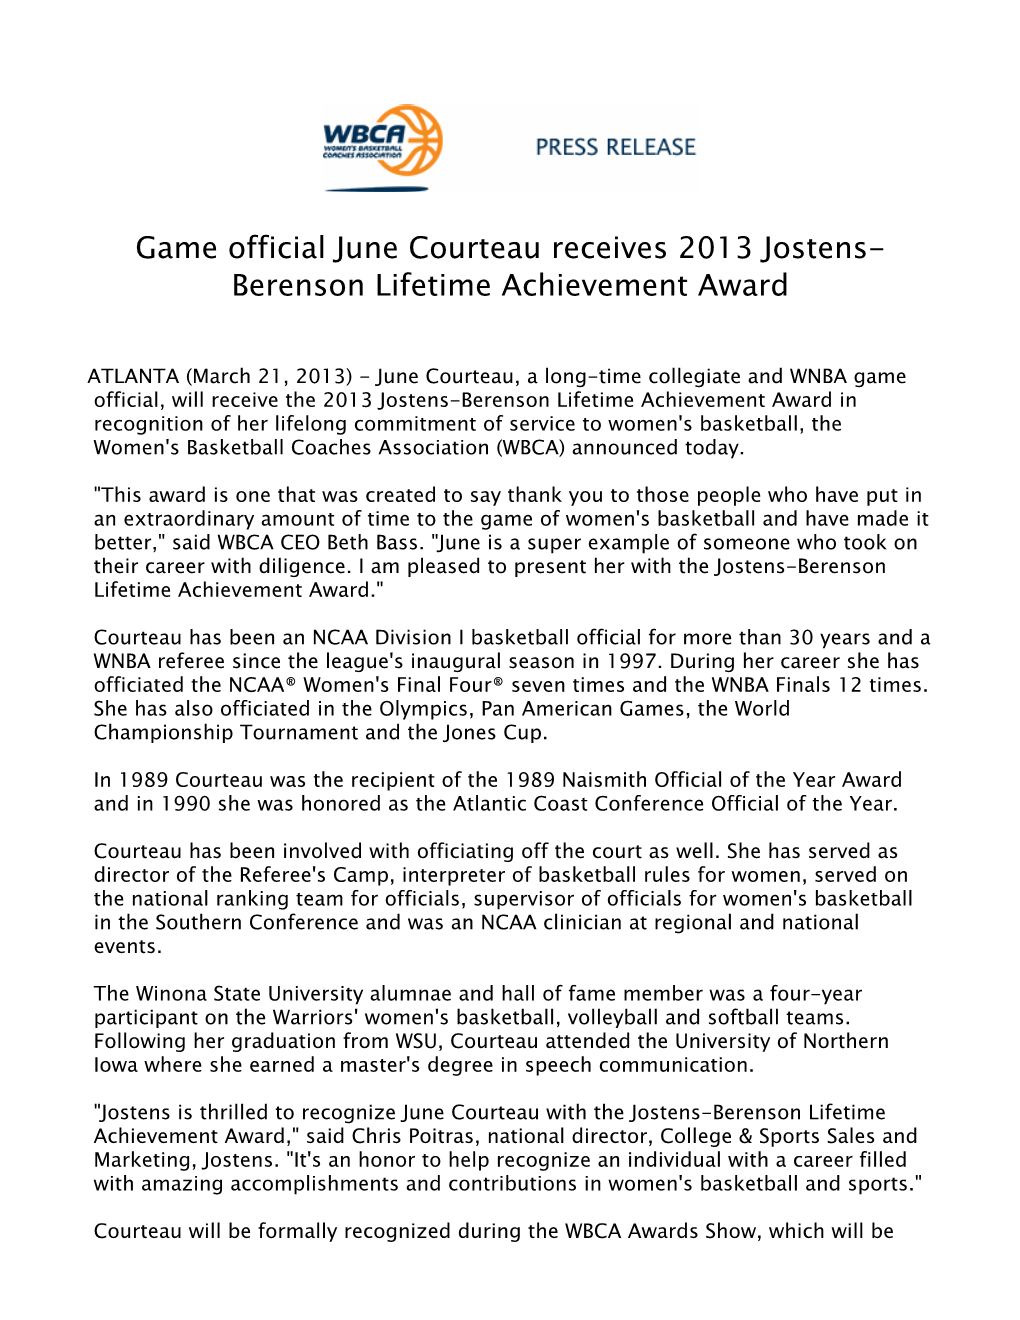 Game Official June Courteau Receives 2013 Jostens-Berenson Lifetime